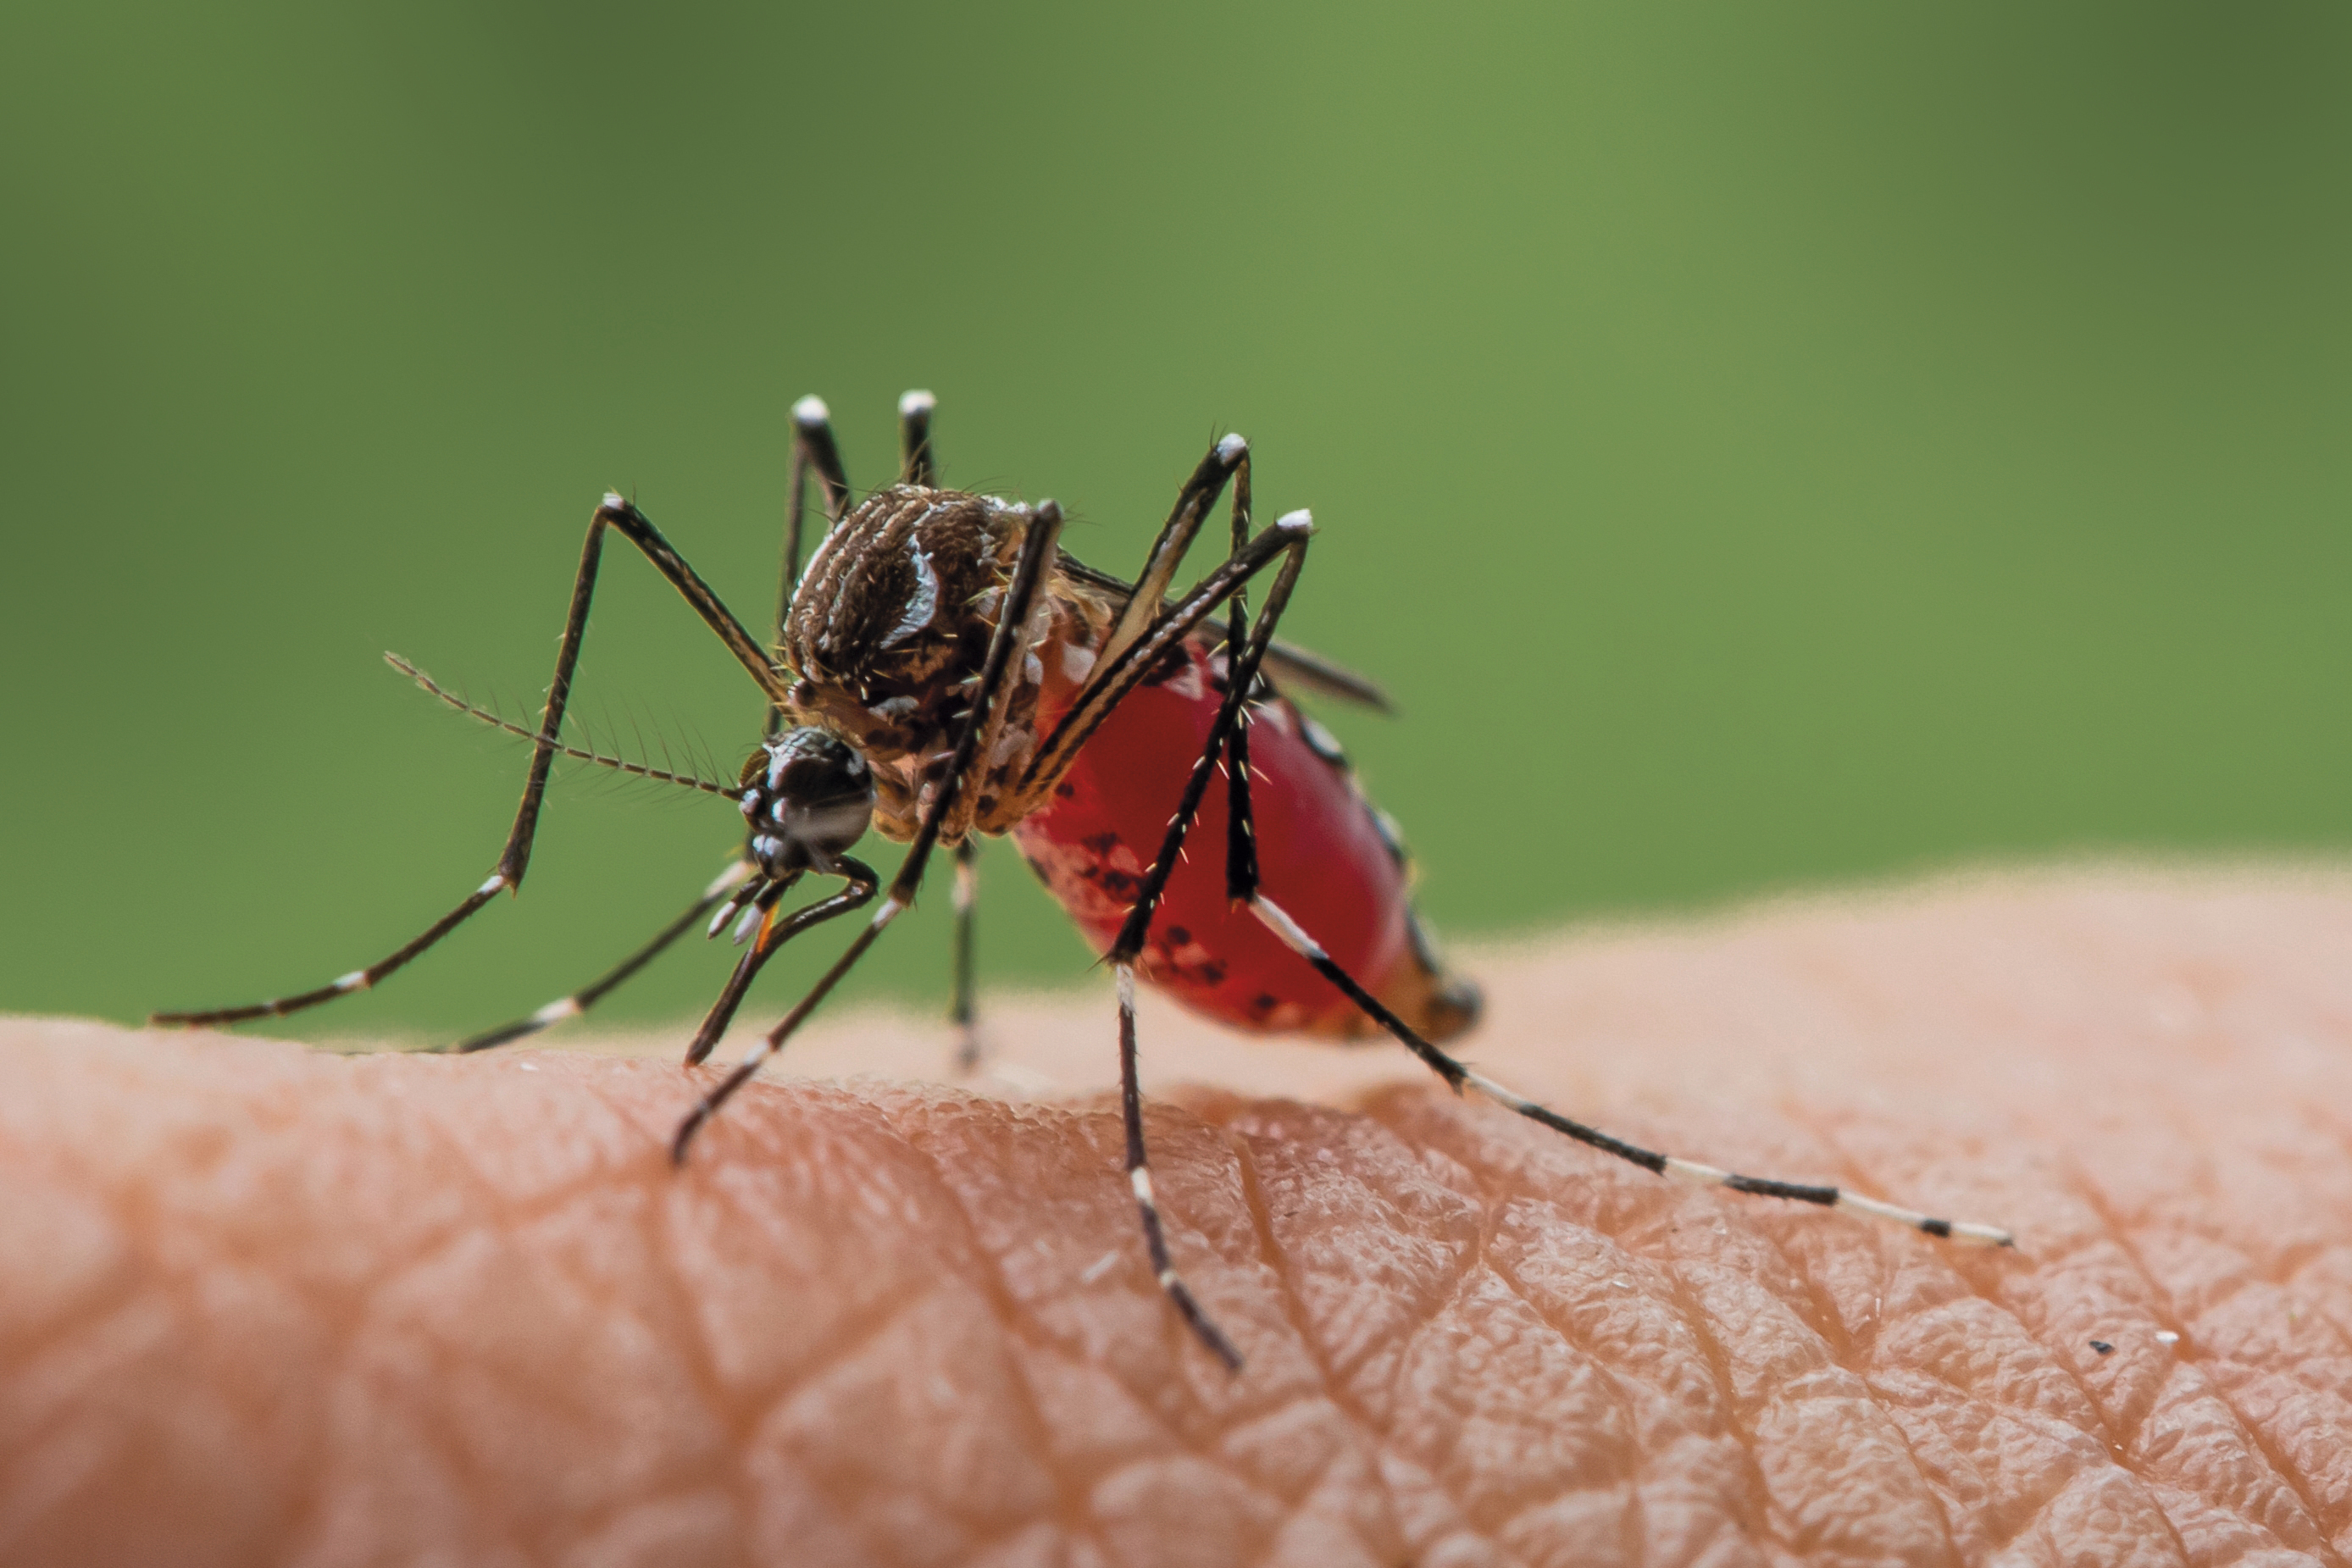 Fotos oficiales de mosquito 'aedes aegypti', entre las especies invasoras que ha difundido el IPBES.